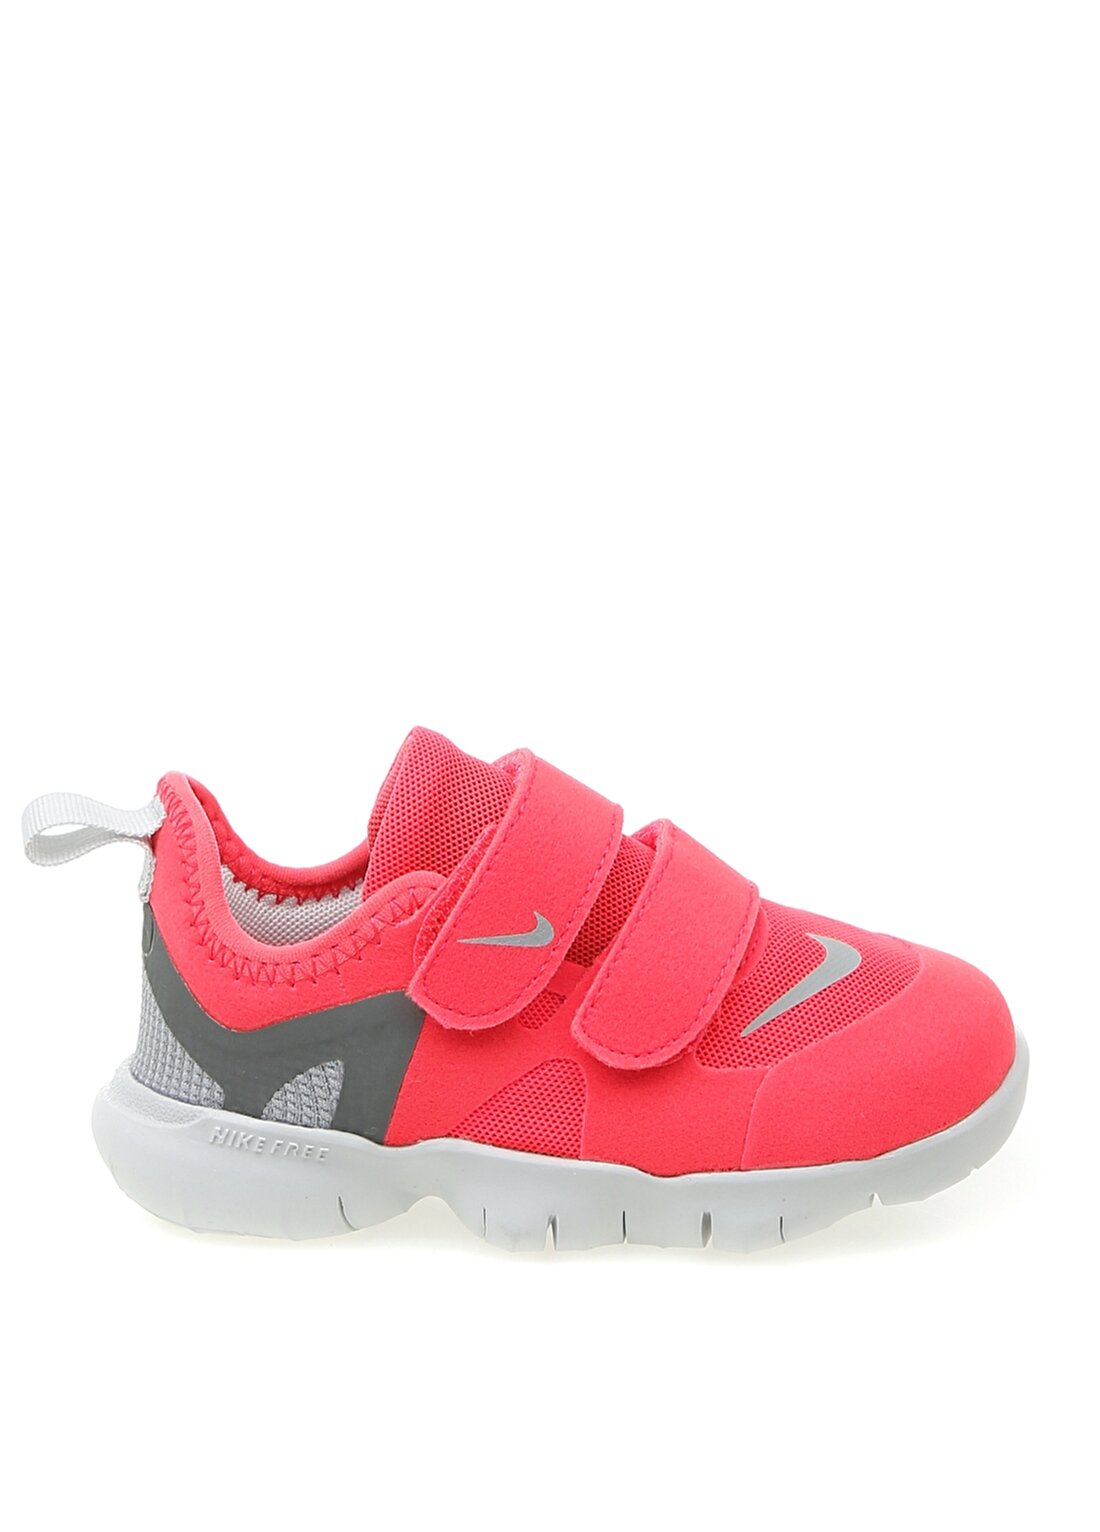 Nike Free RN 5.0 Bebek Yürüyüş Ayakkabısı